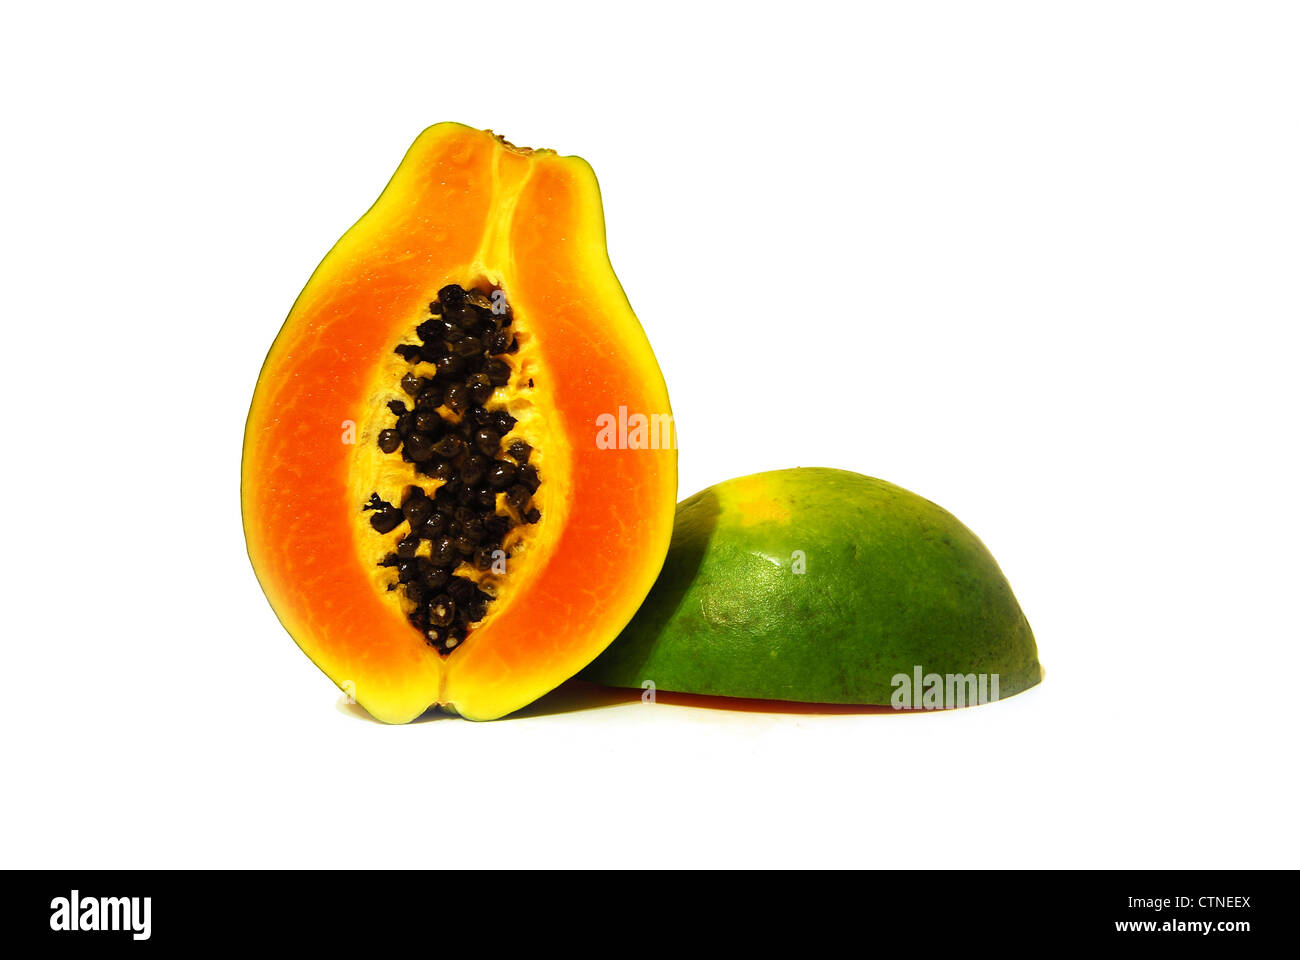 two nice tasty halves of papaya on white background Stock Photo